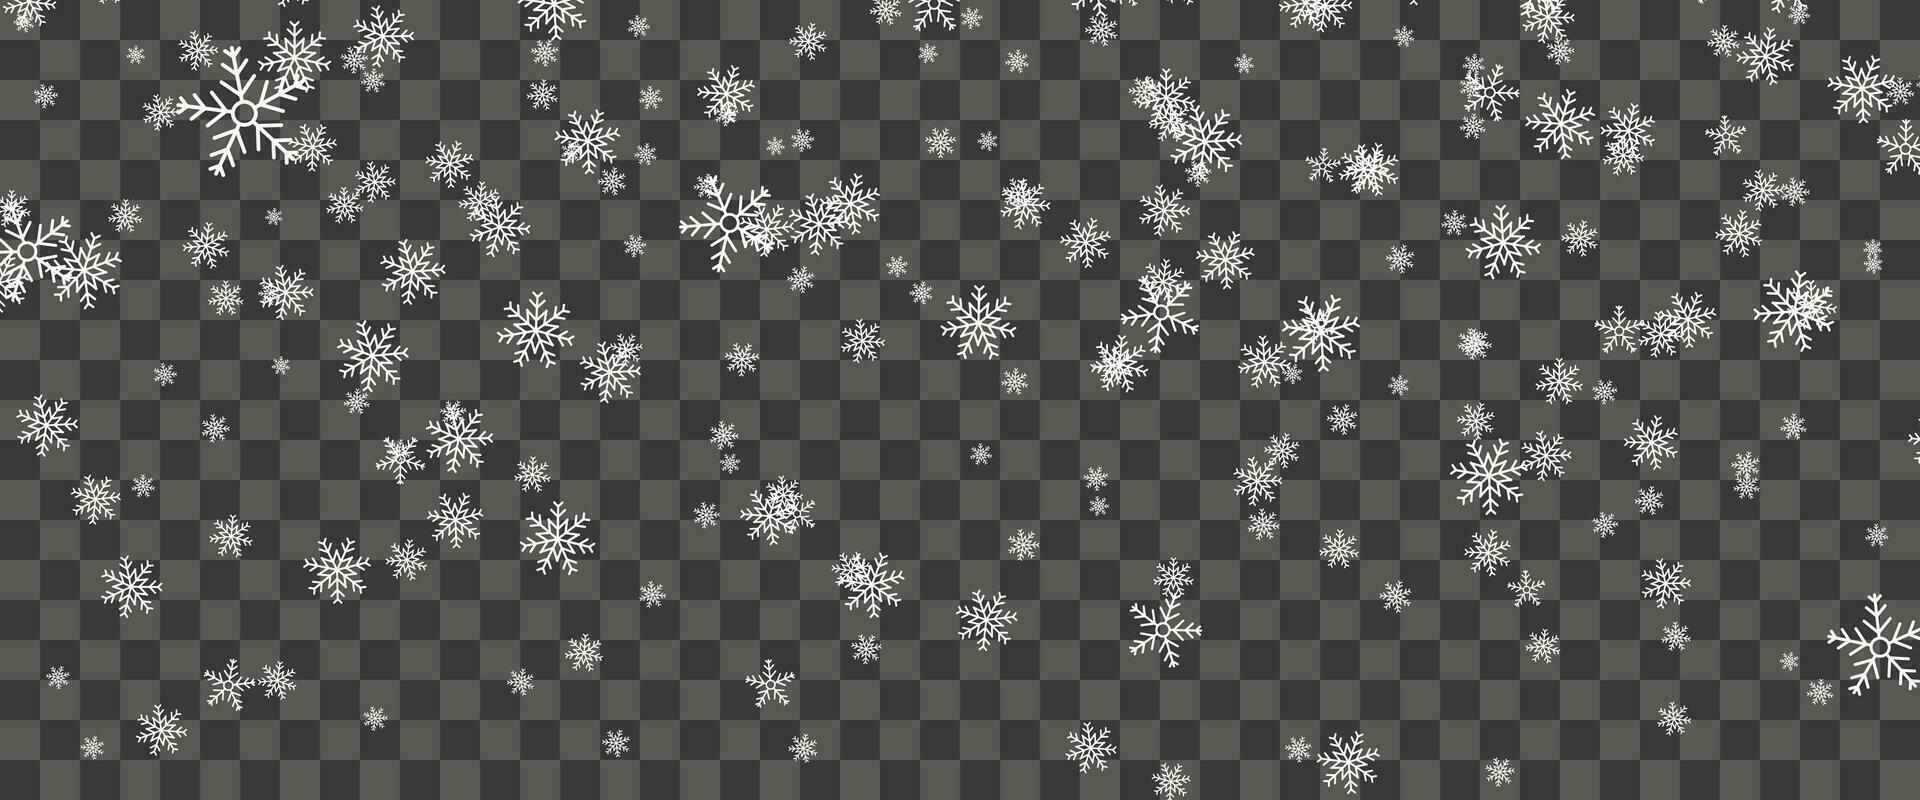 snöfall och faller snöflingor på bakgrund. vit snöflingor och jul snö. vektor illustration